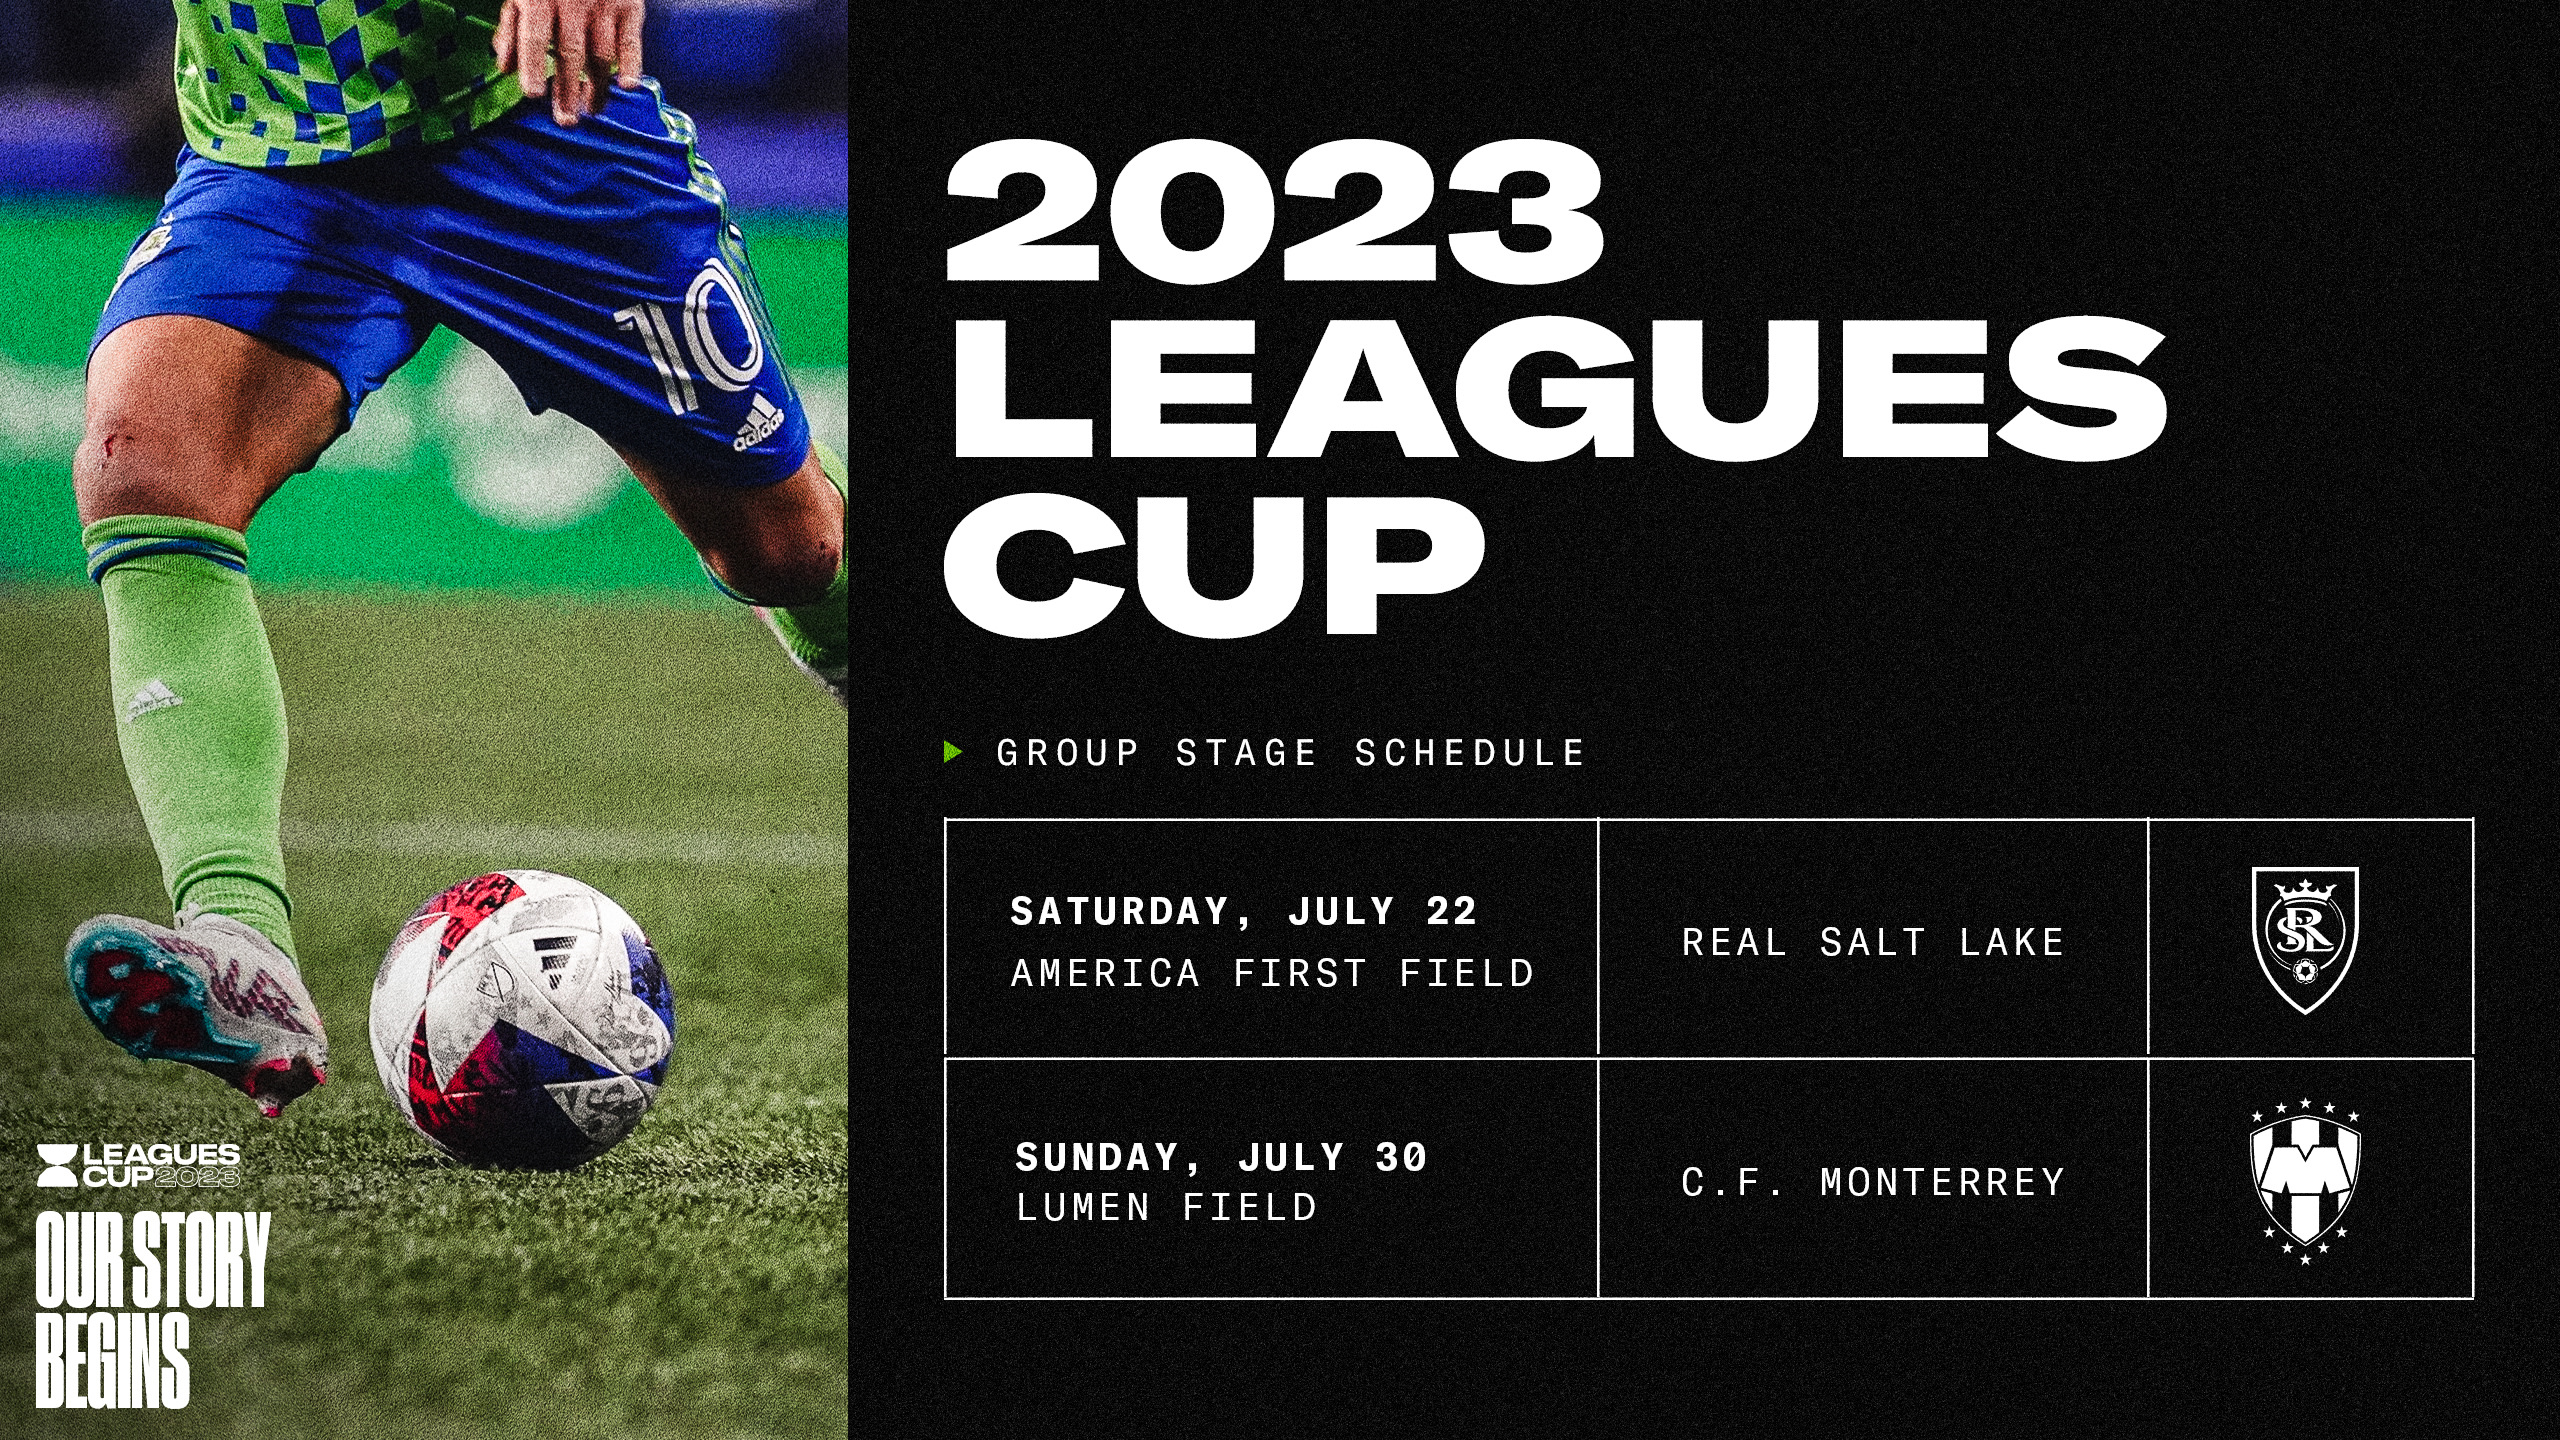 Nashville Soccer Club Advances to Leagues Cup 2023 Final